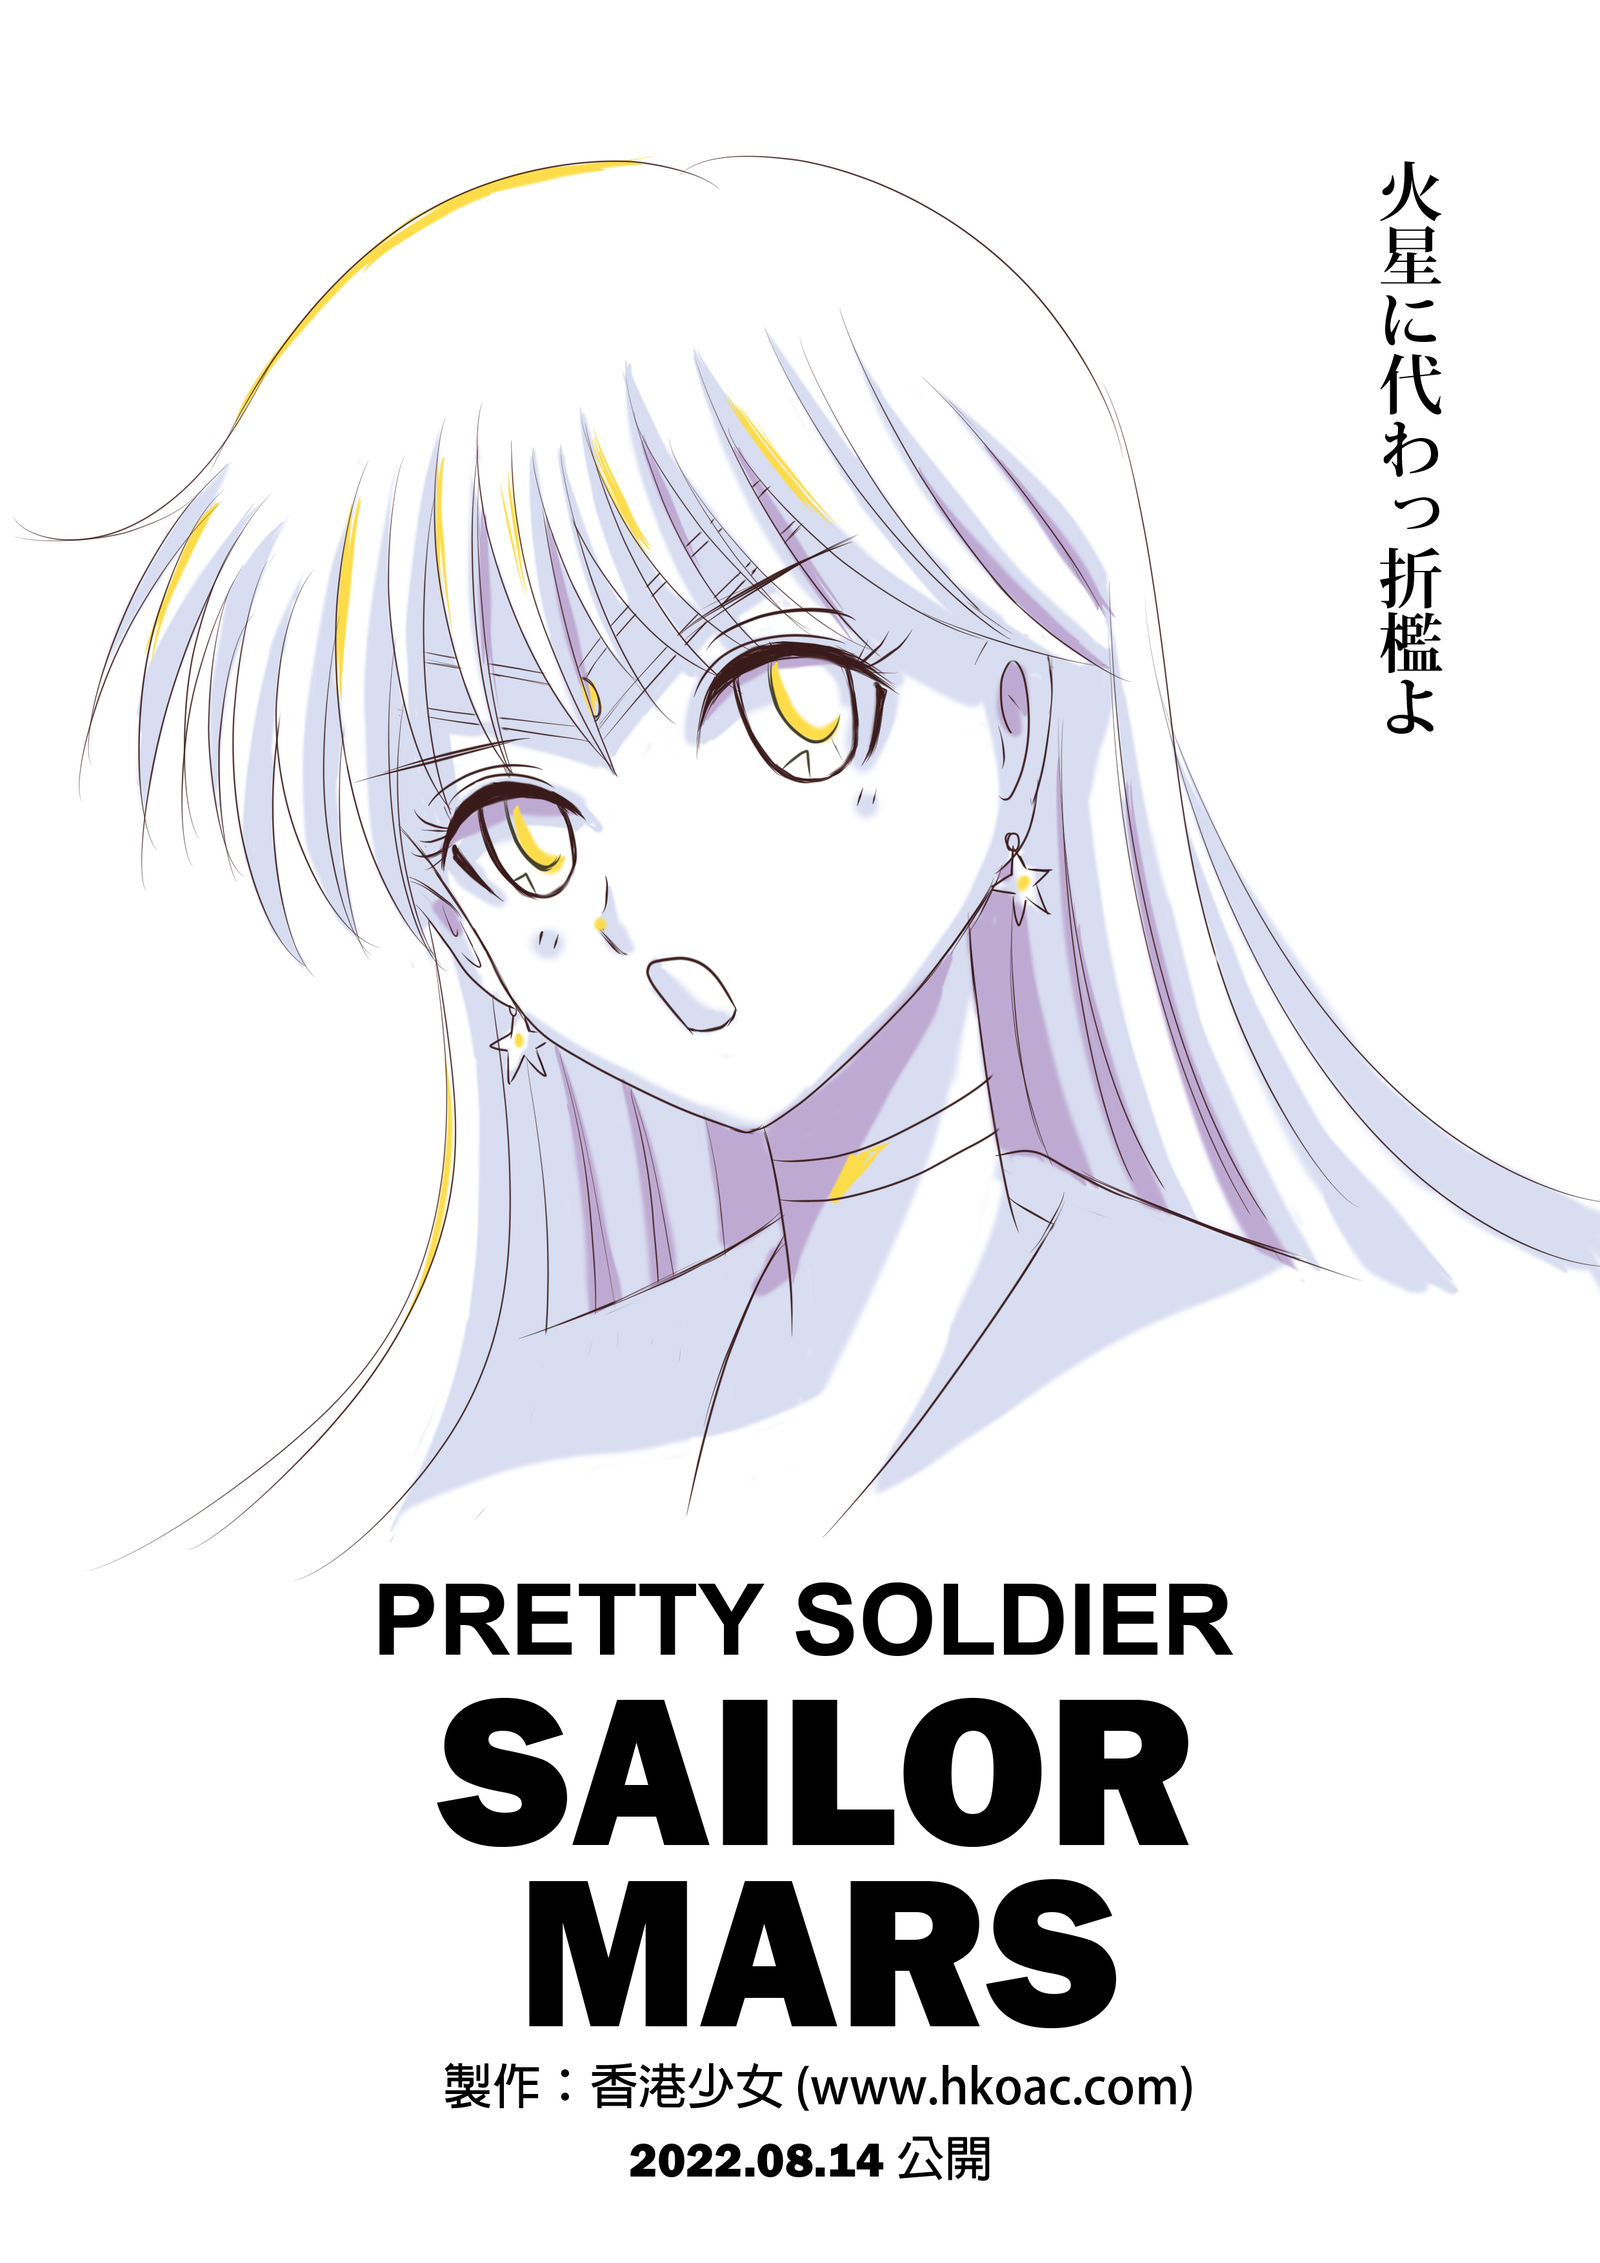 美少女战士火野丽 Sailor Mars 海报